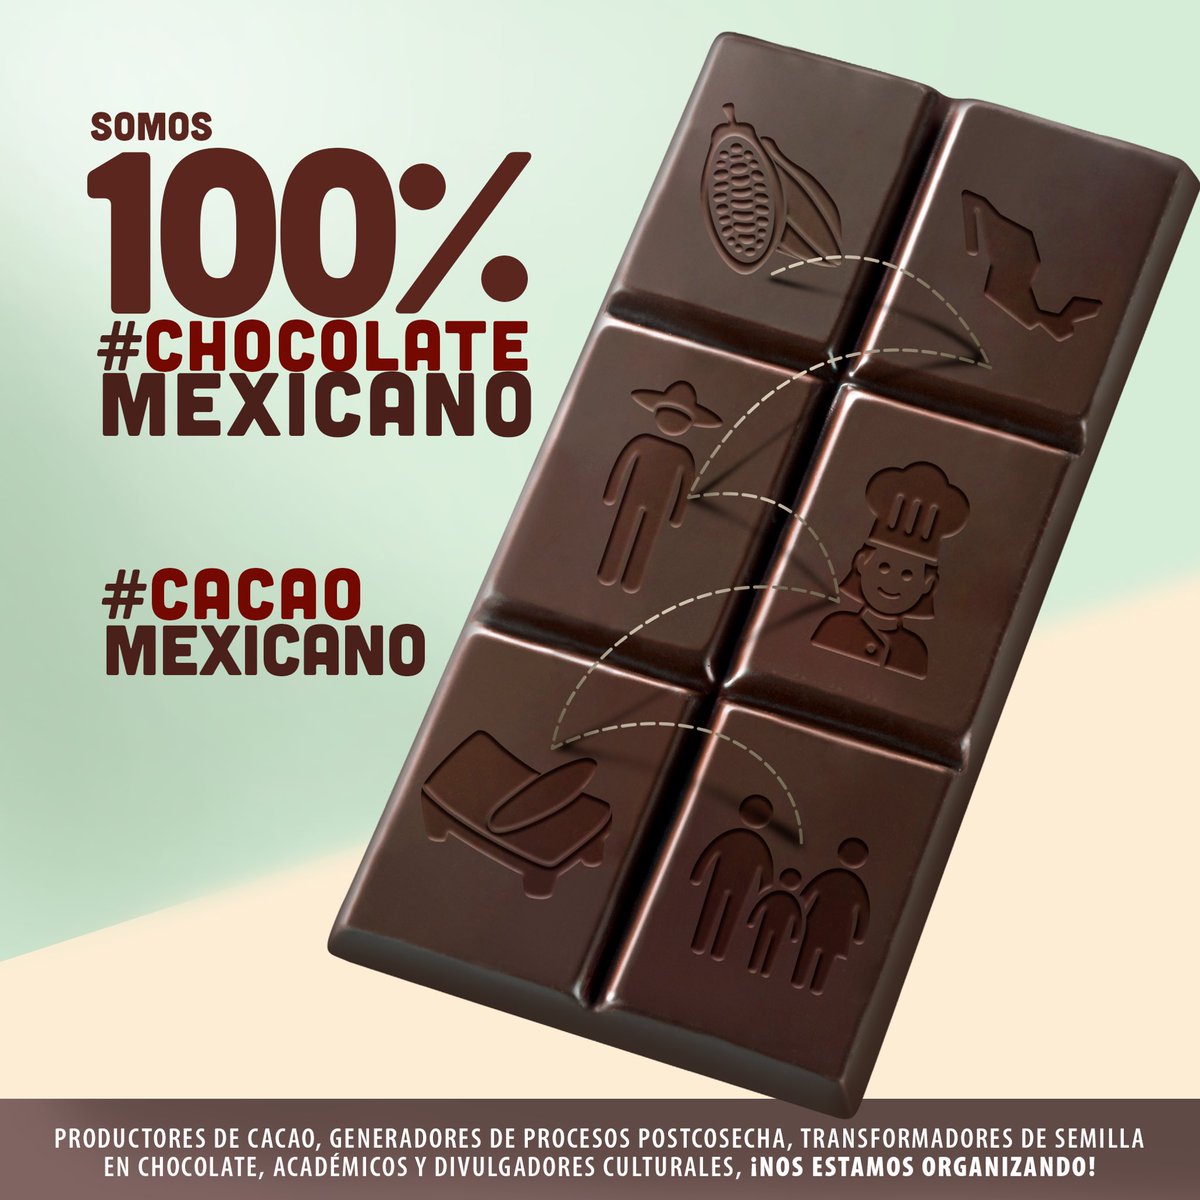 #DiaInternacionaldelChocolate #chocolatemexicano #cacaomexicano